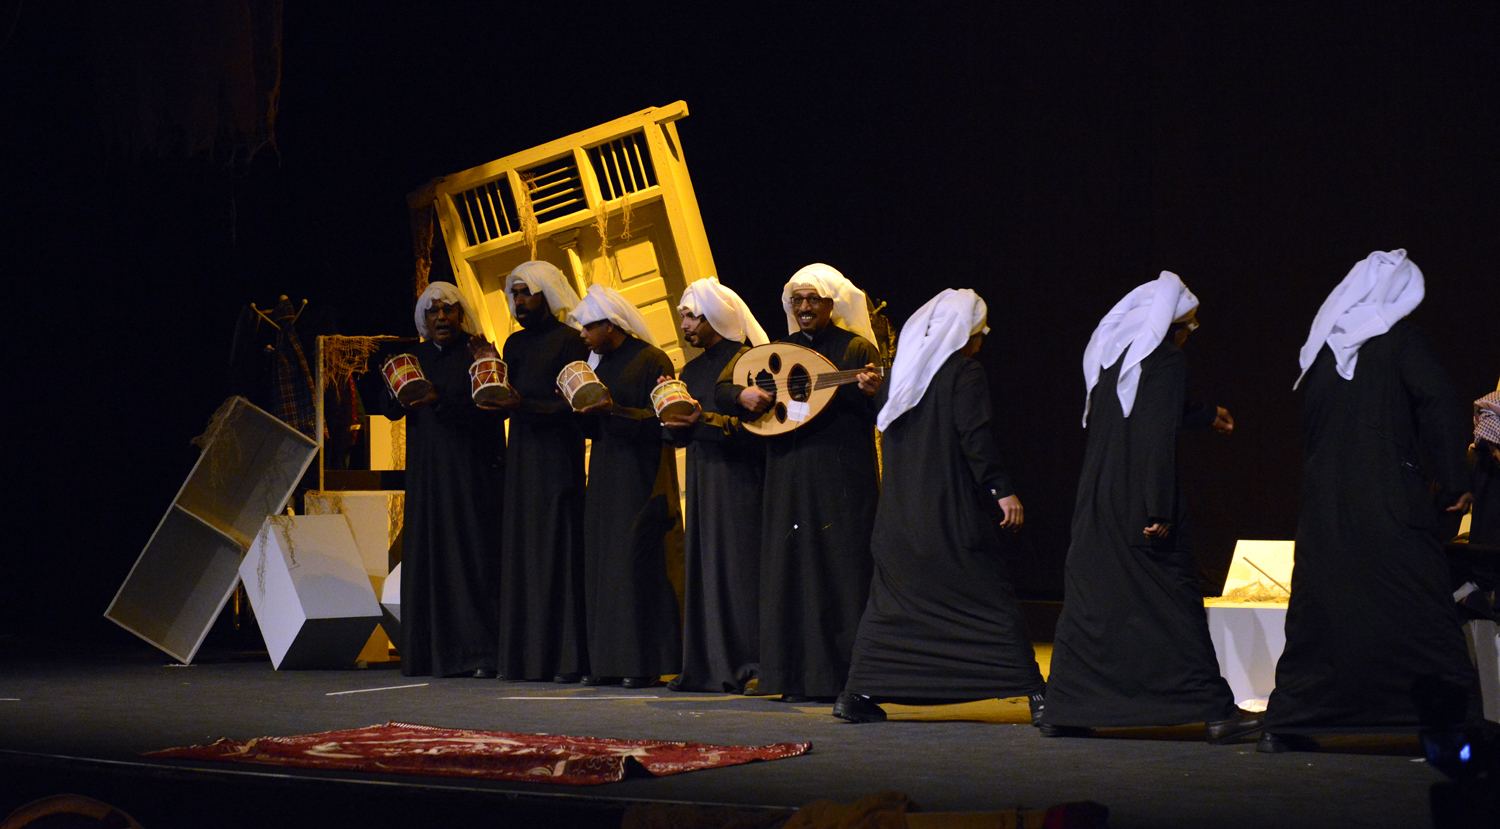 جانب من مسرحية (مشهد من الزمن الجميل) التي عرضت خلال افتتاح مهرجان الكويت المسرحي الثامن عشر